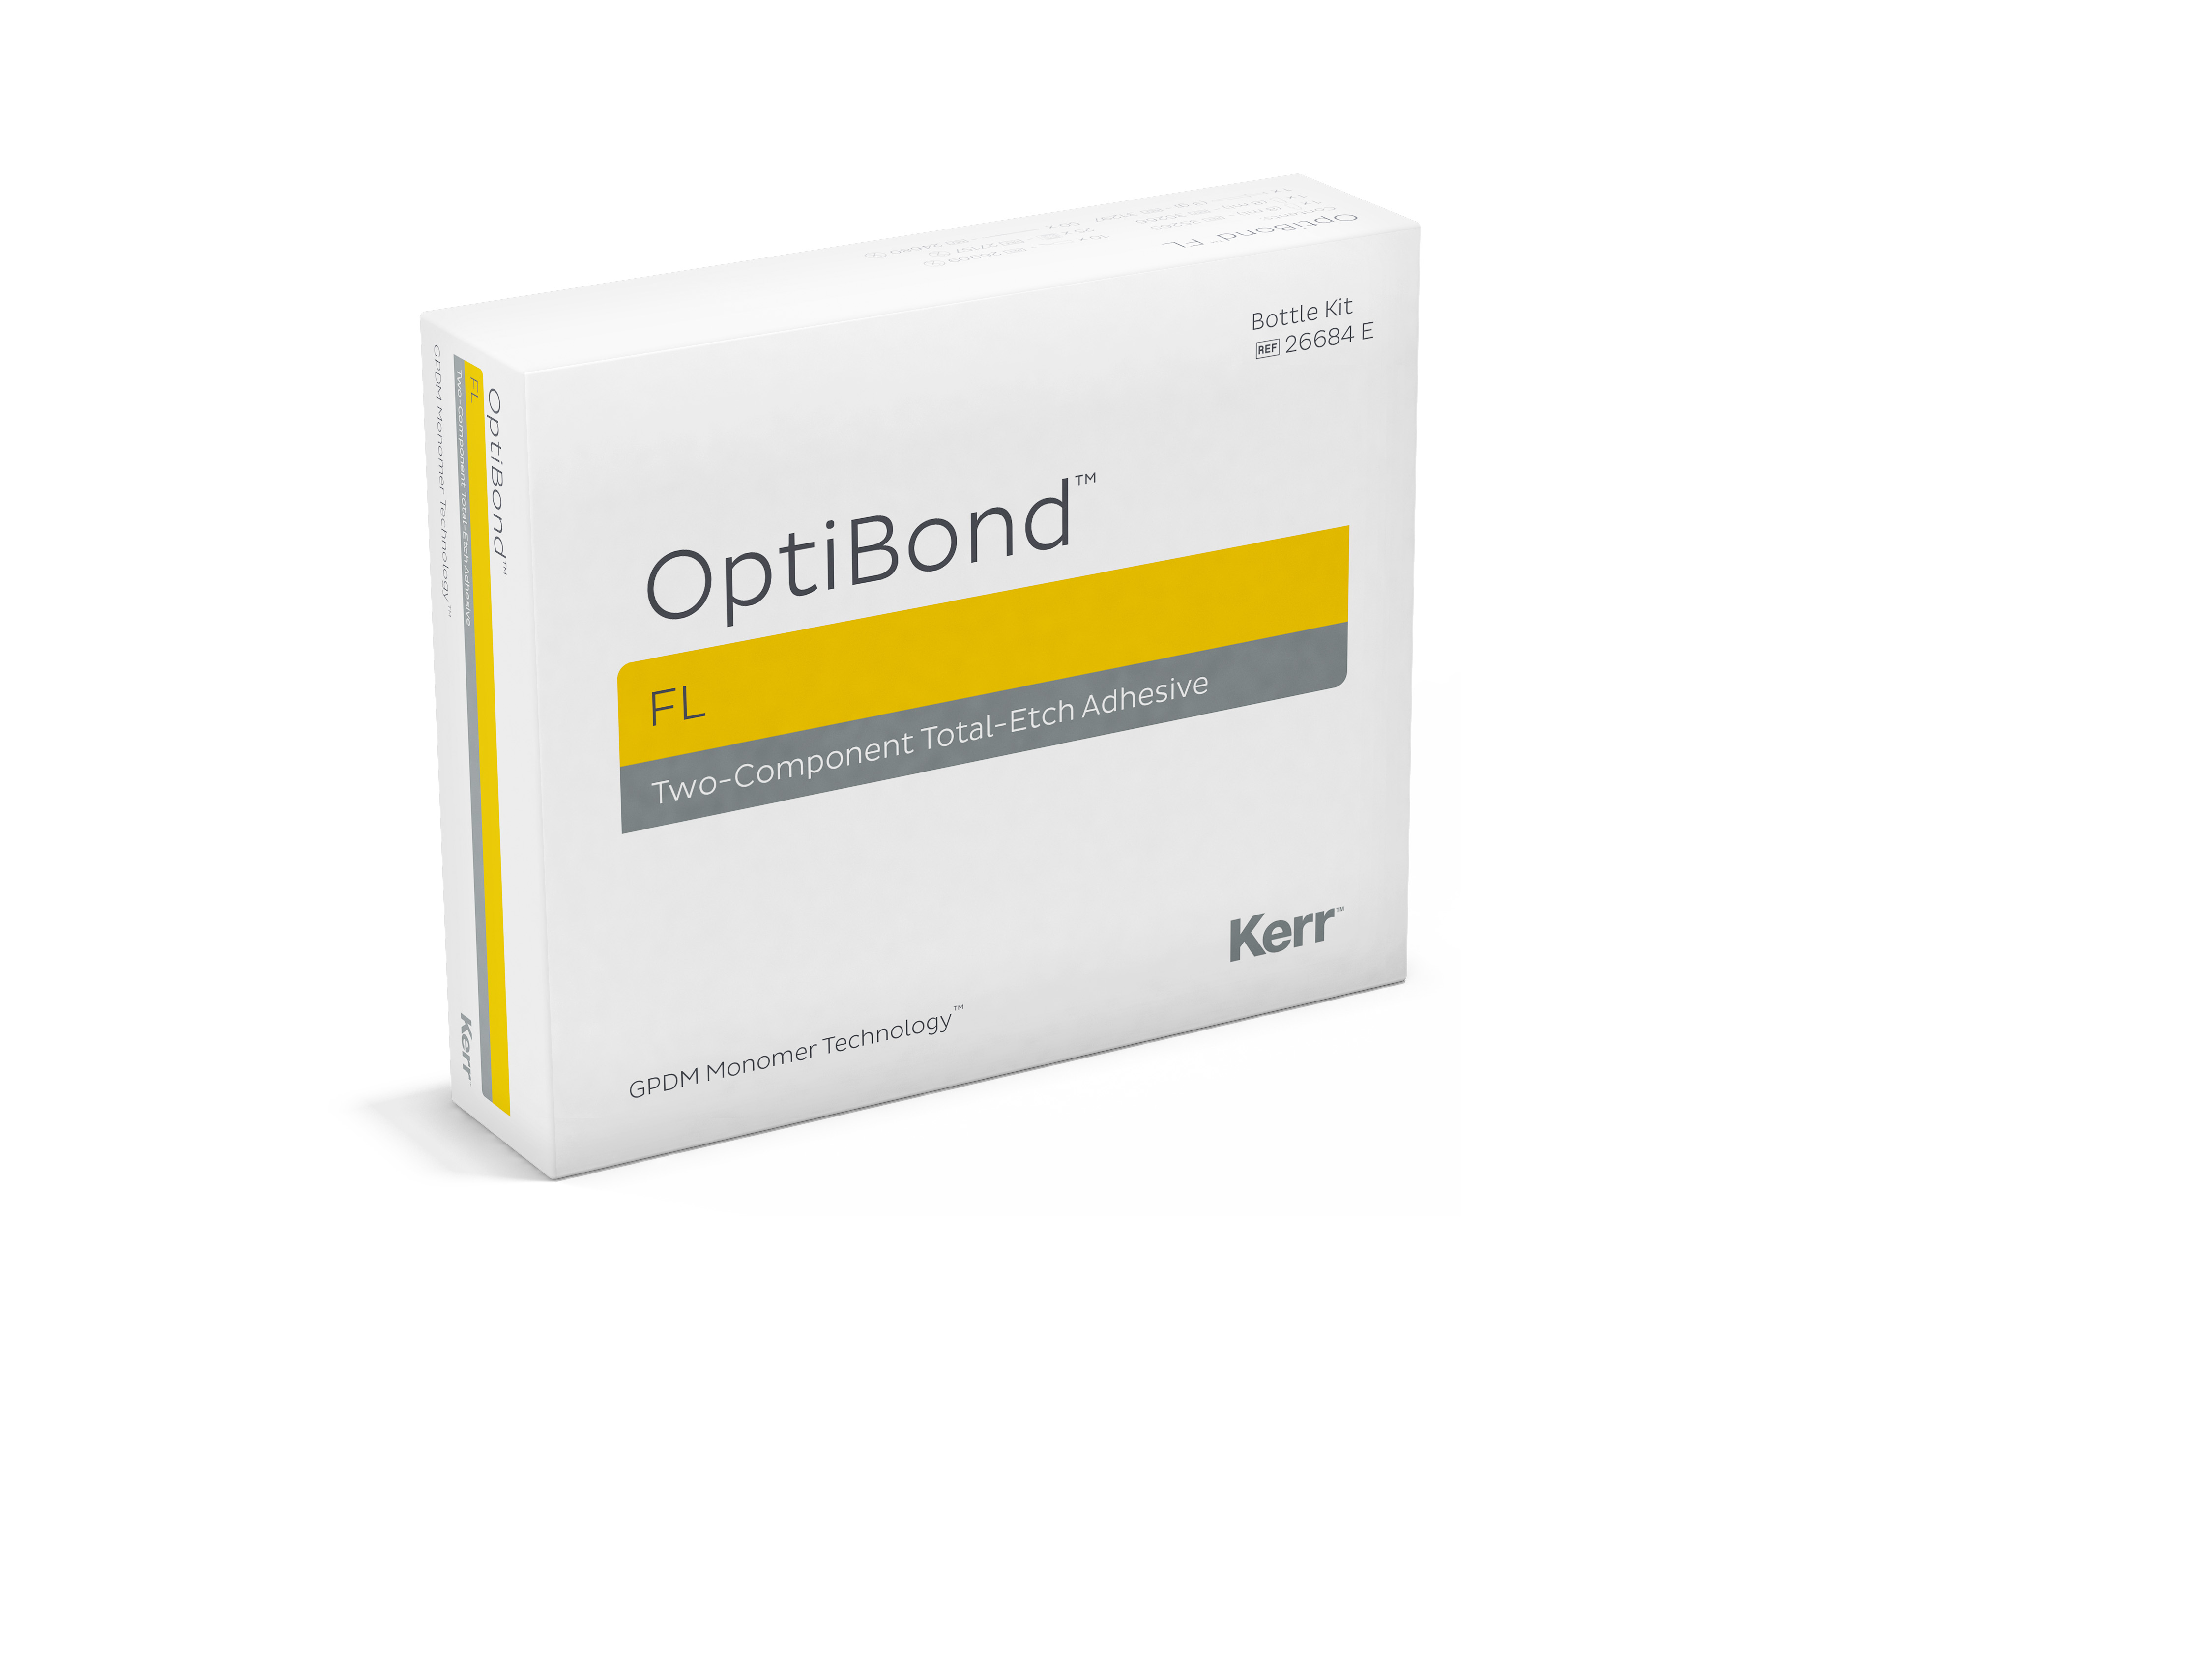 OptiBond FL Introductory Kit 